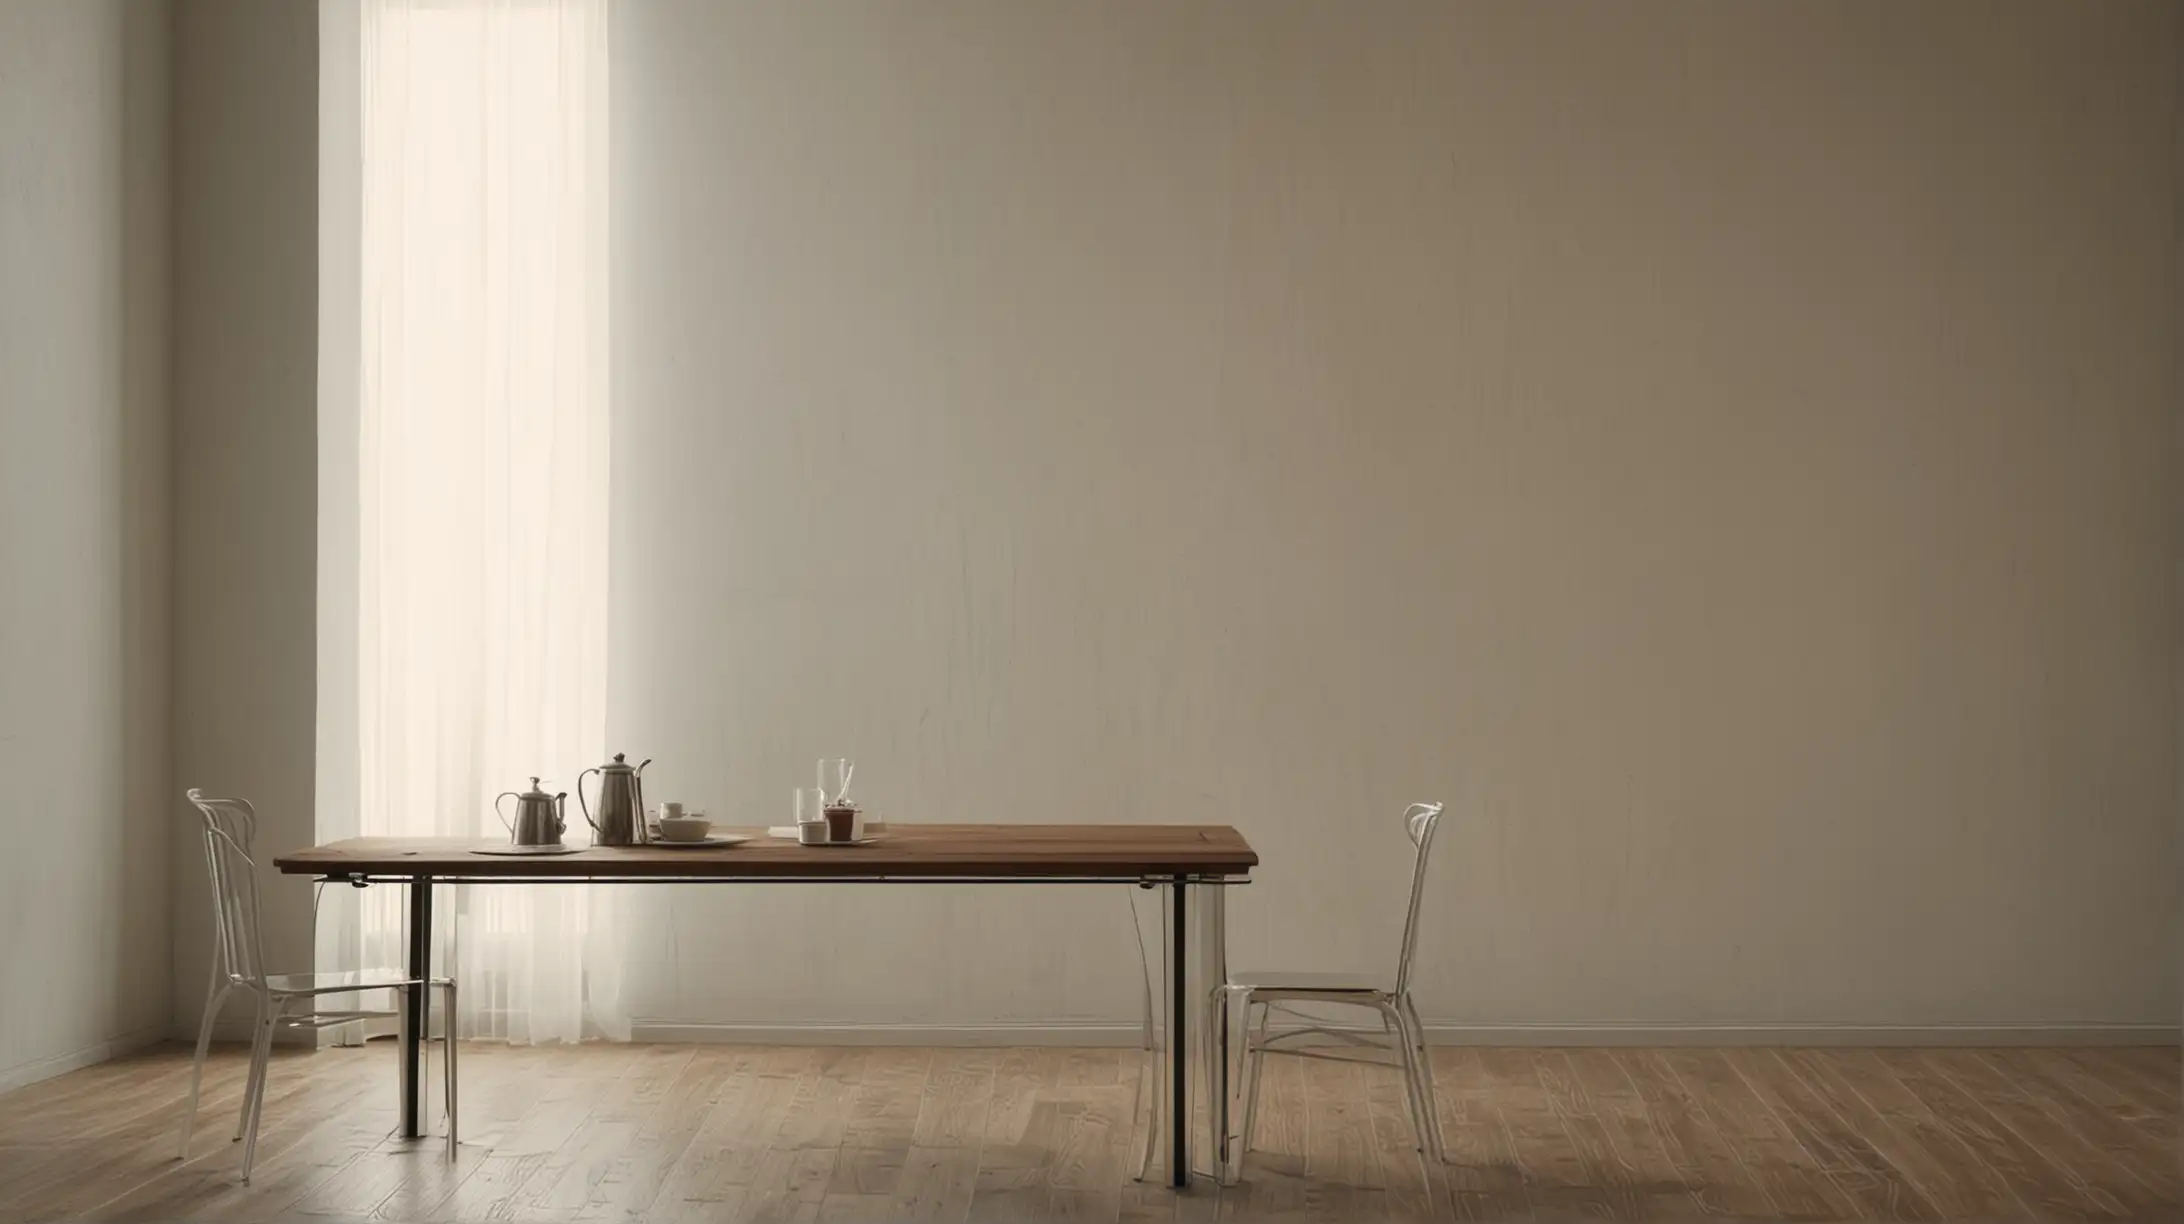 riflesso luce di finestra sul muro stanza vuota con tavolino 